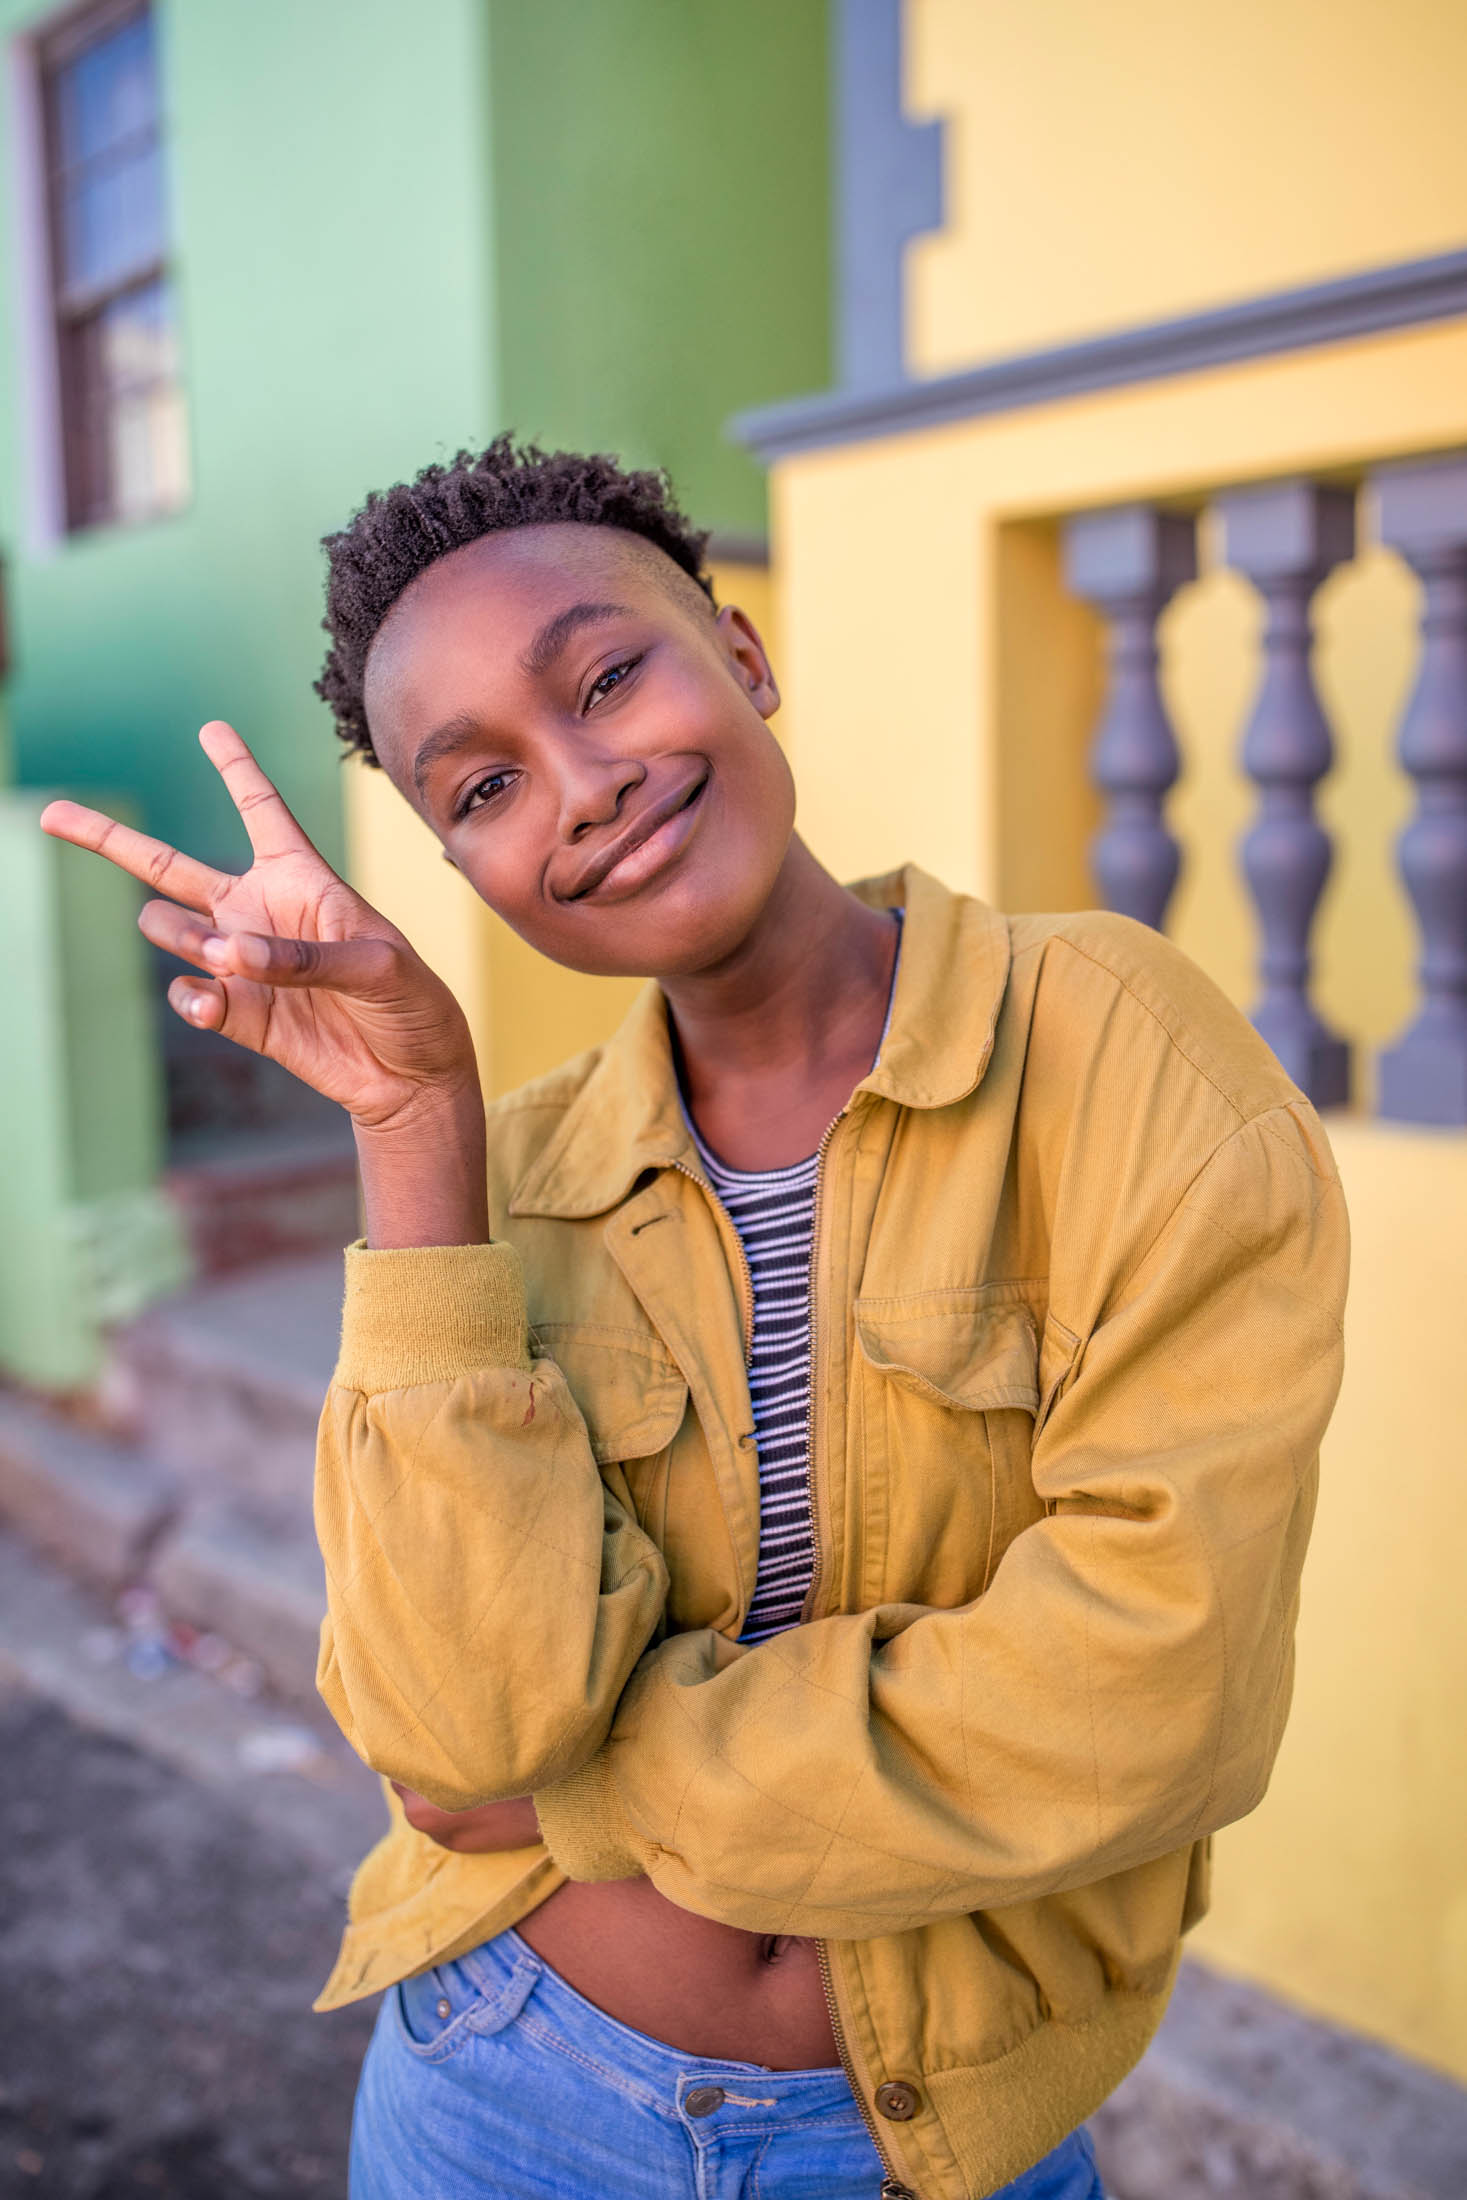 Eine junge Frau mit kurzen Haaren lächelt in die Kamera und macht mit einer Hand ein Peace-Zeichen. Sie trägt ein gestreiftes Hemd und eine gelbe Jacke. Sie steht vor einem farbenfrohen städtischen Hintergrund. © Fotografie Tomas Rodriguez